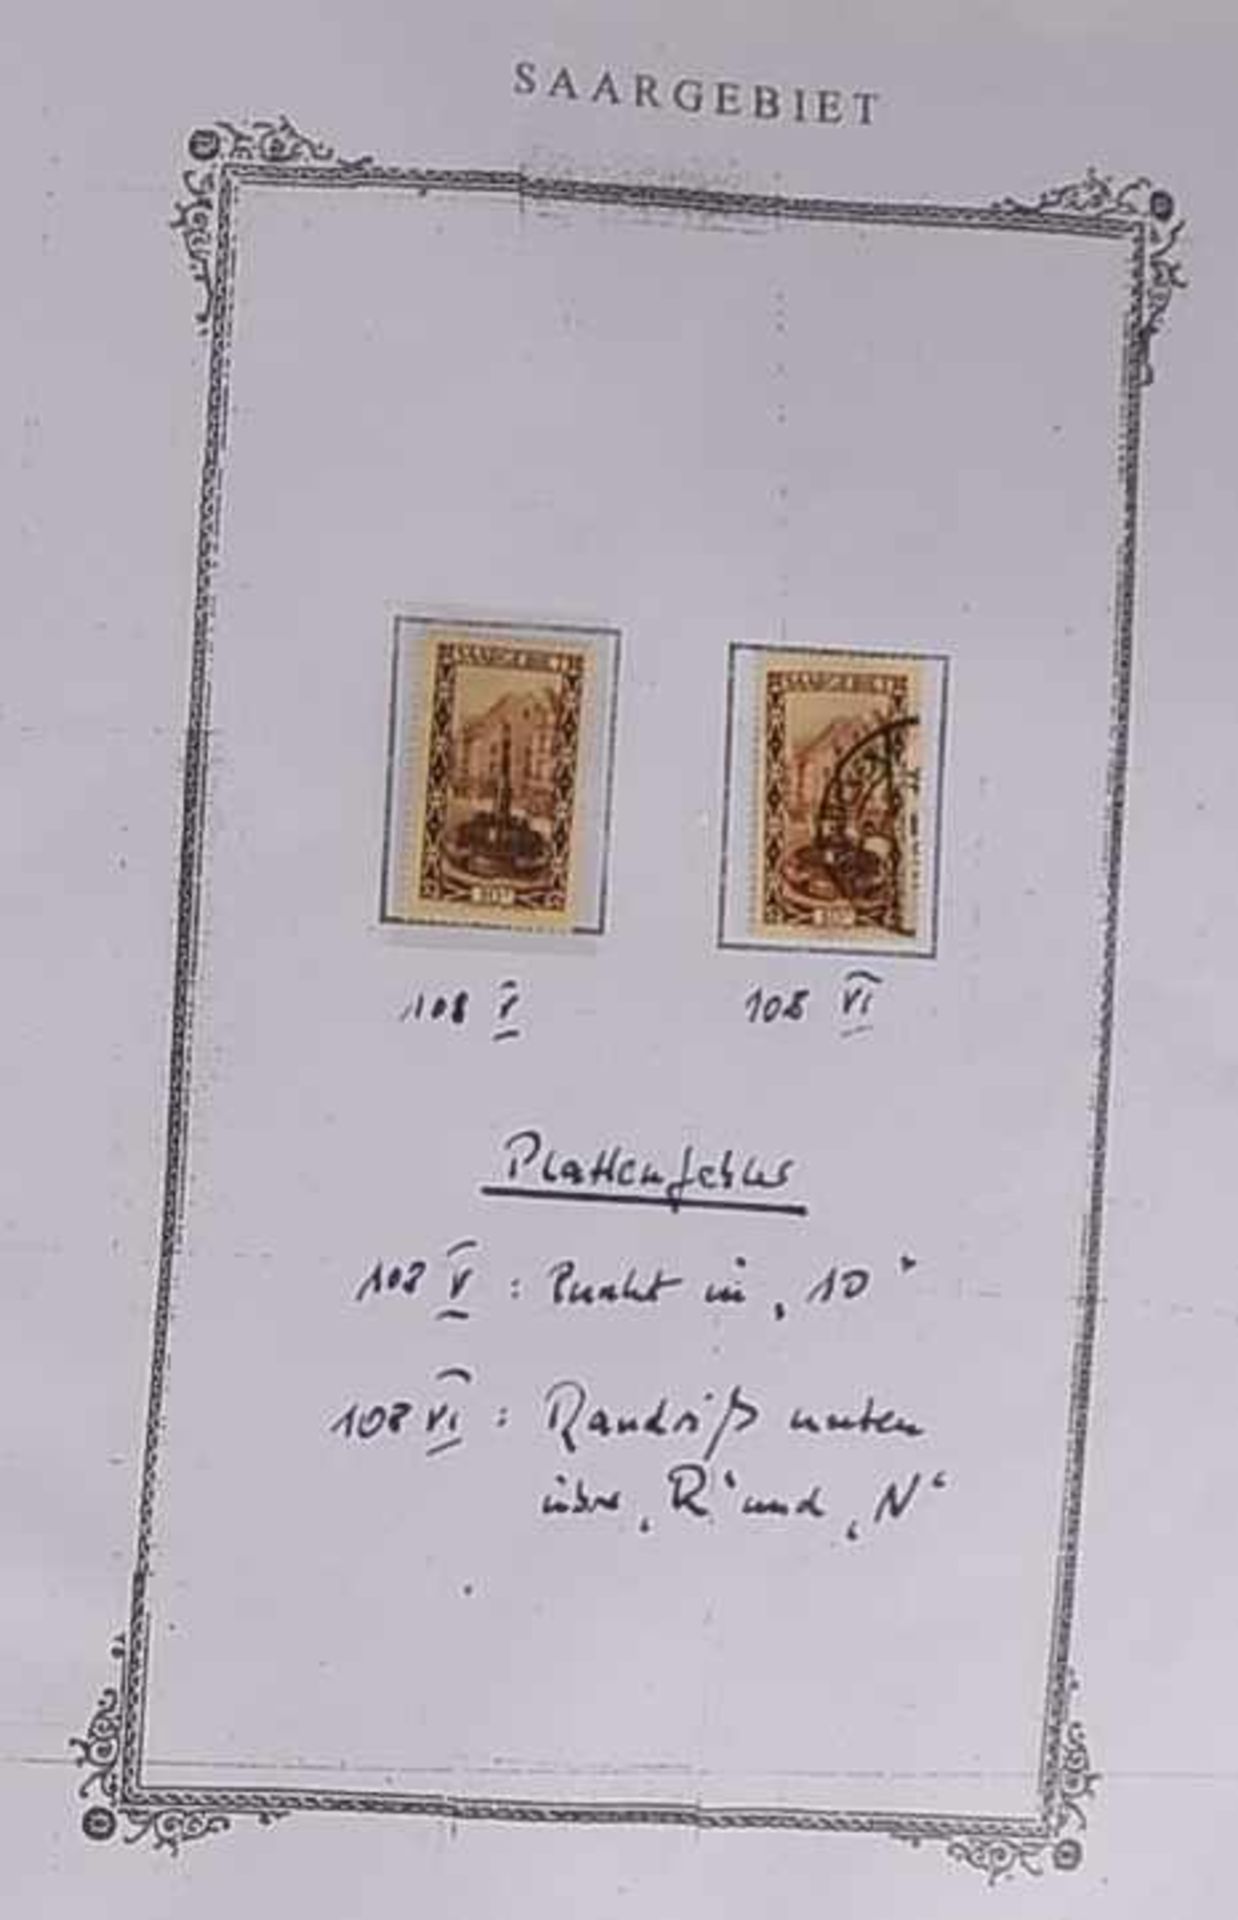 Briefmarken: 'Saargebiet', 1920 - 1929, und 'Saarland', 1948 - 1956 (eine vom Sammler selbst